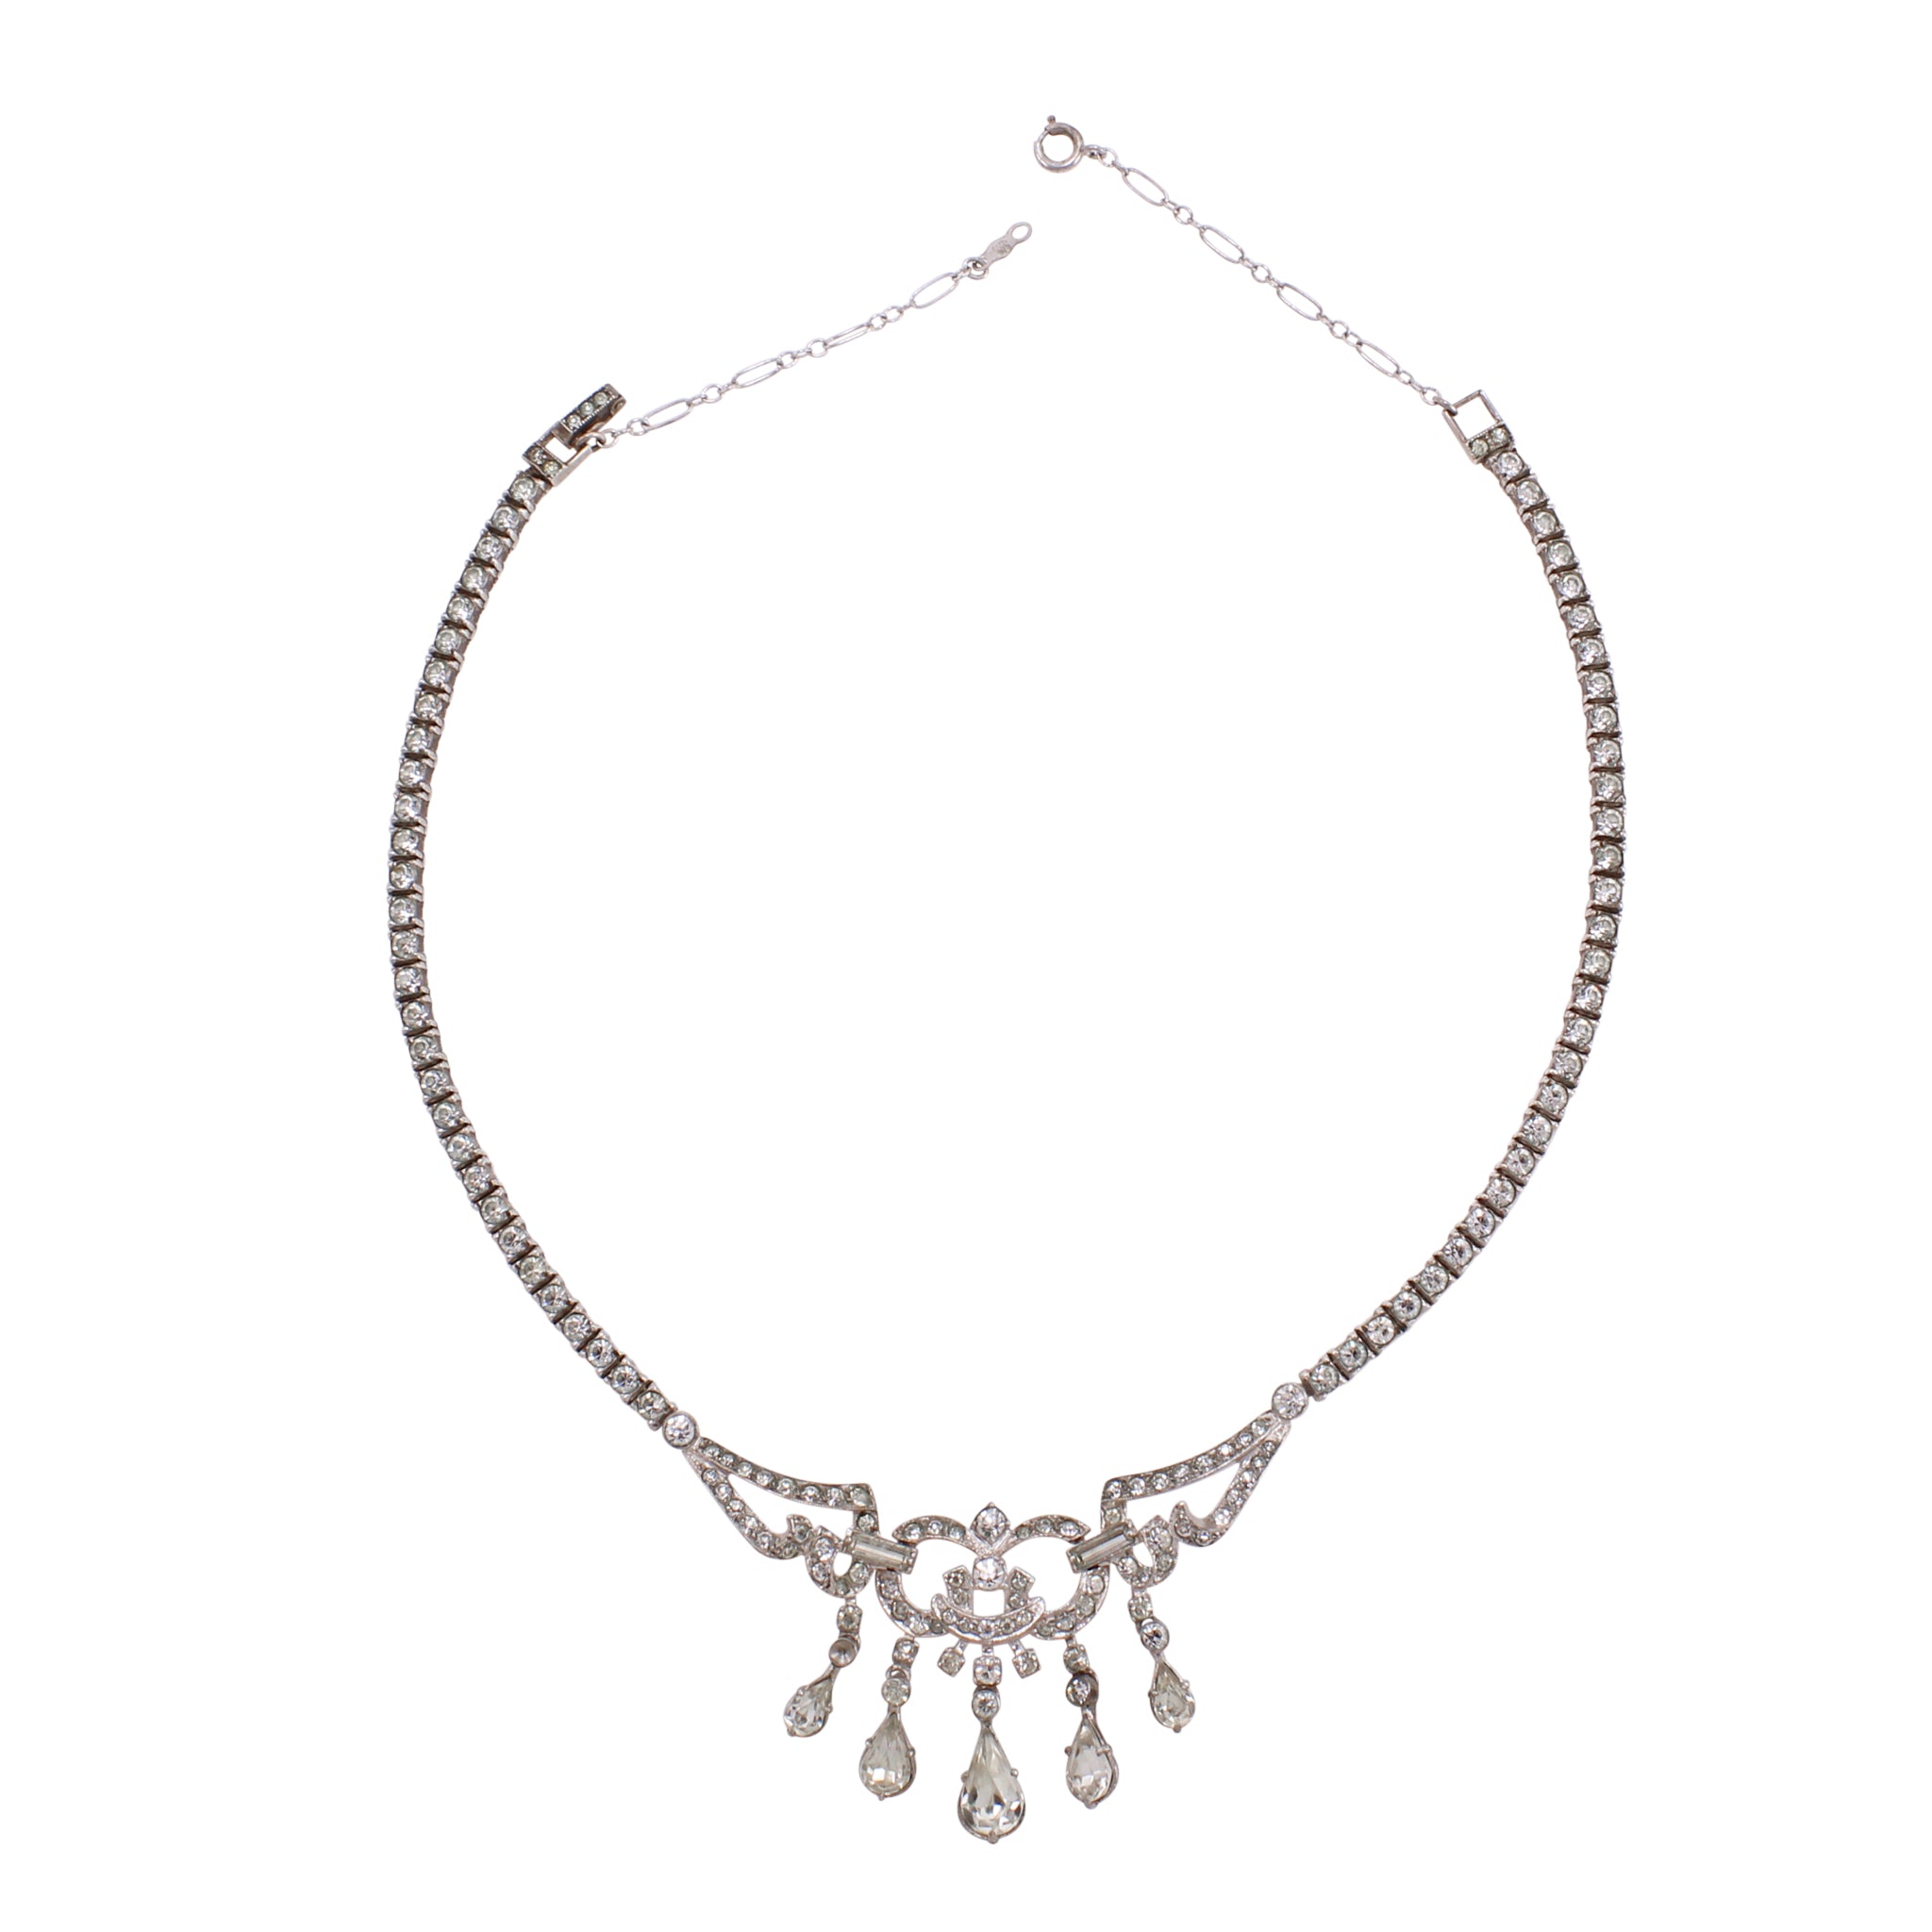 Vintage Rhinestone Necklace – Carol Lipworth Designs